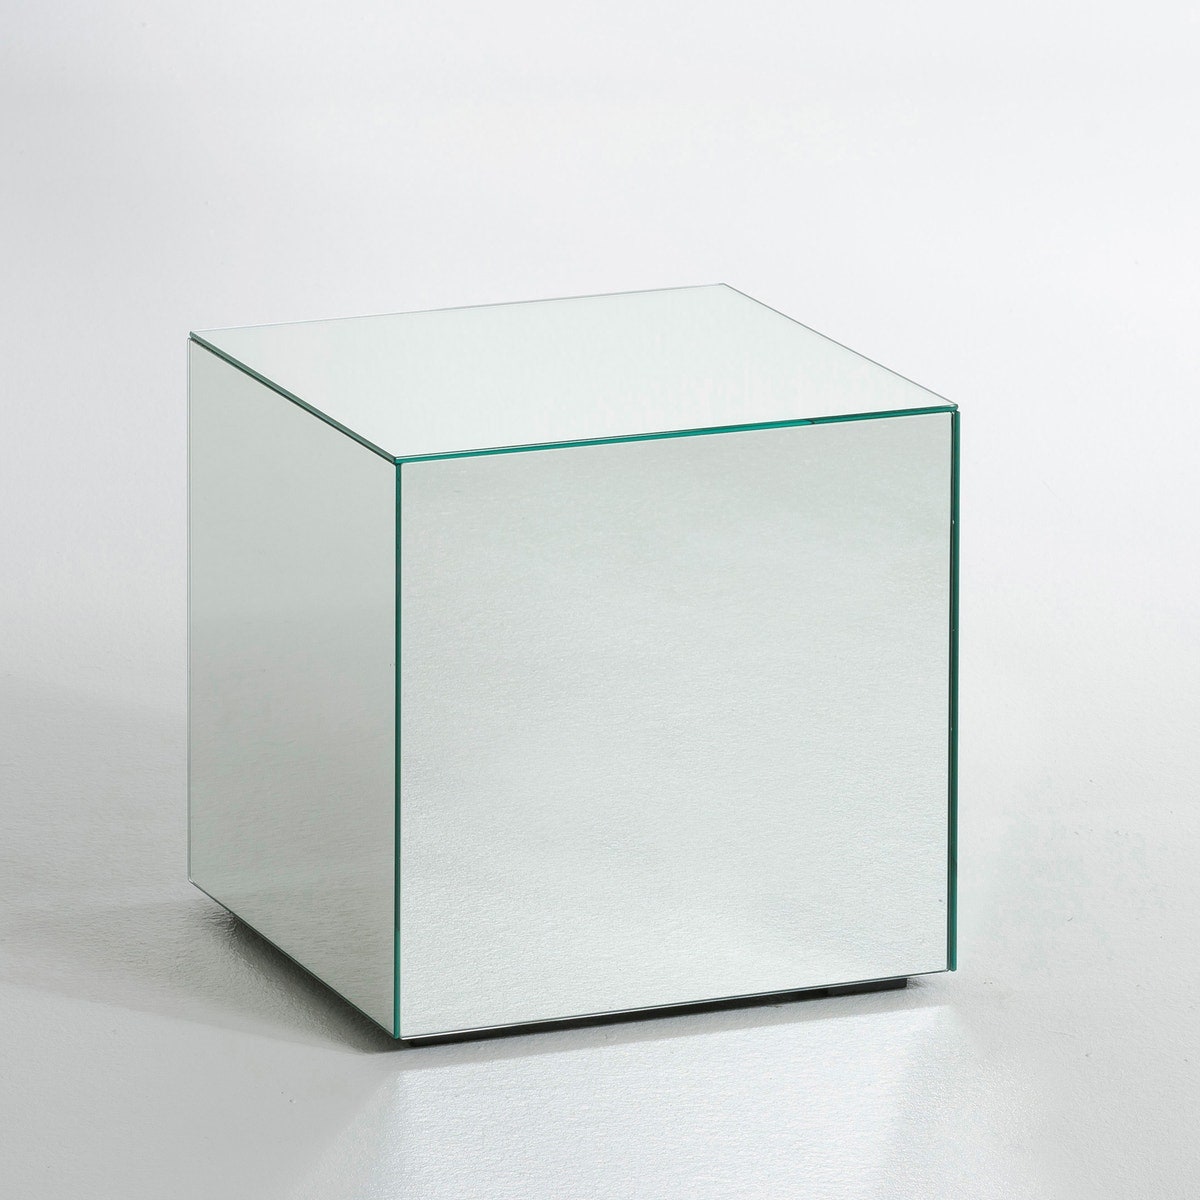 Зеркальный столиккуб размер S 11 699 руб.